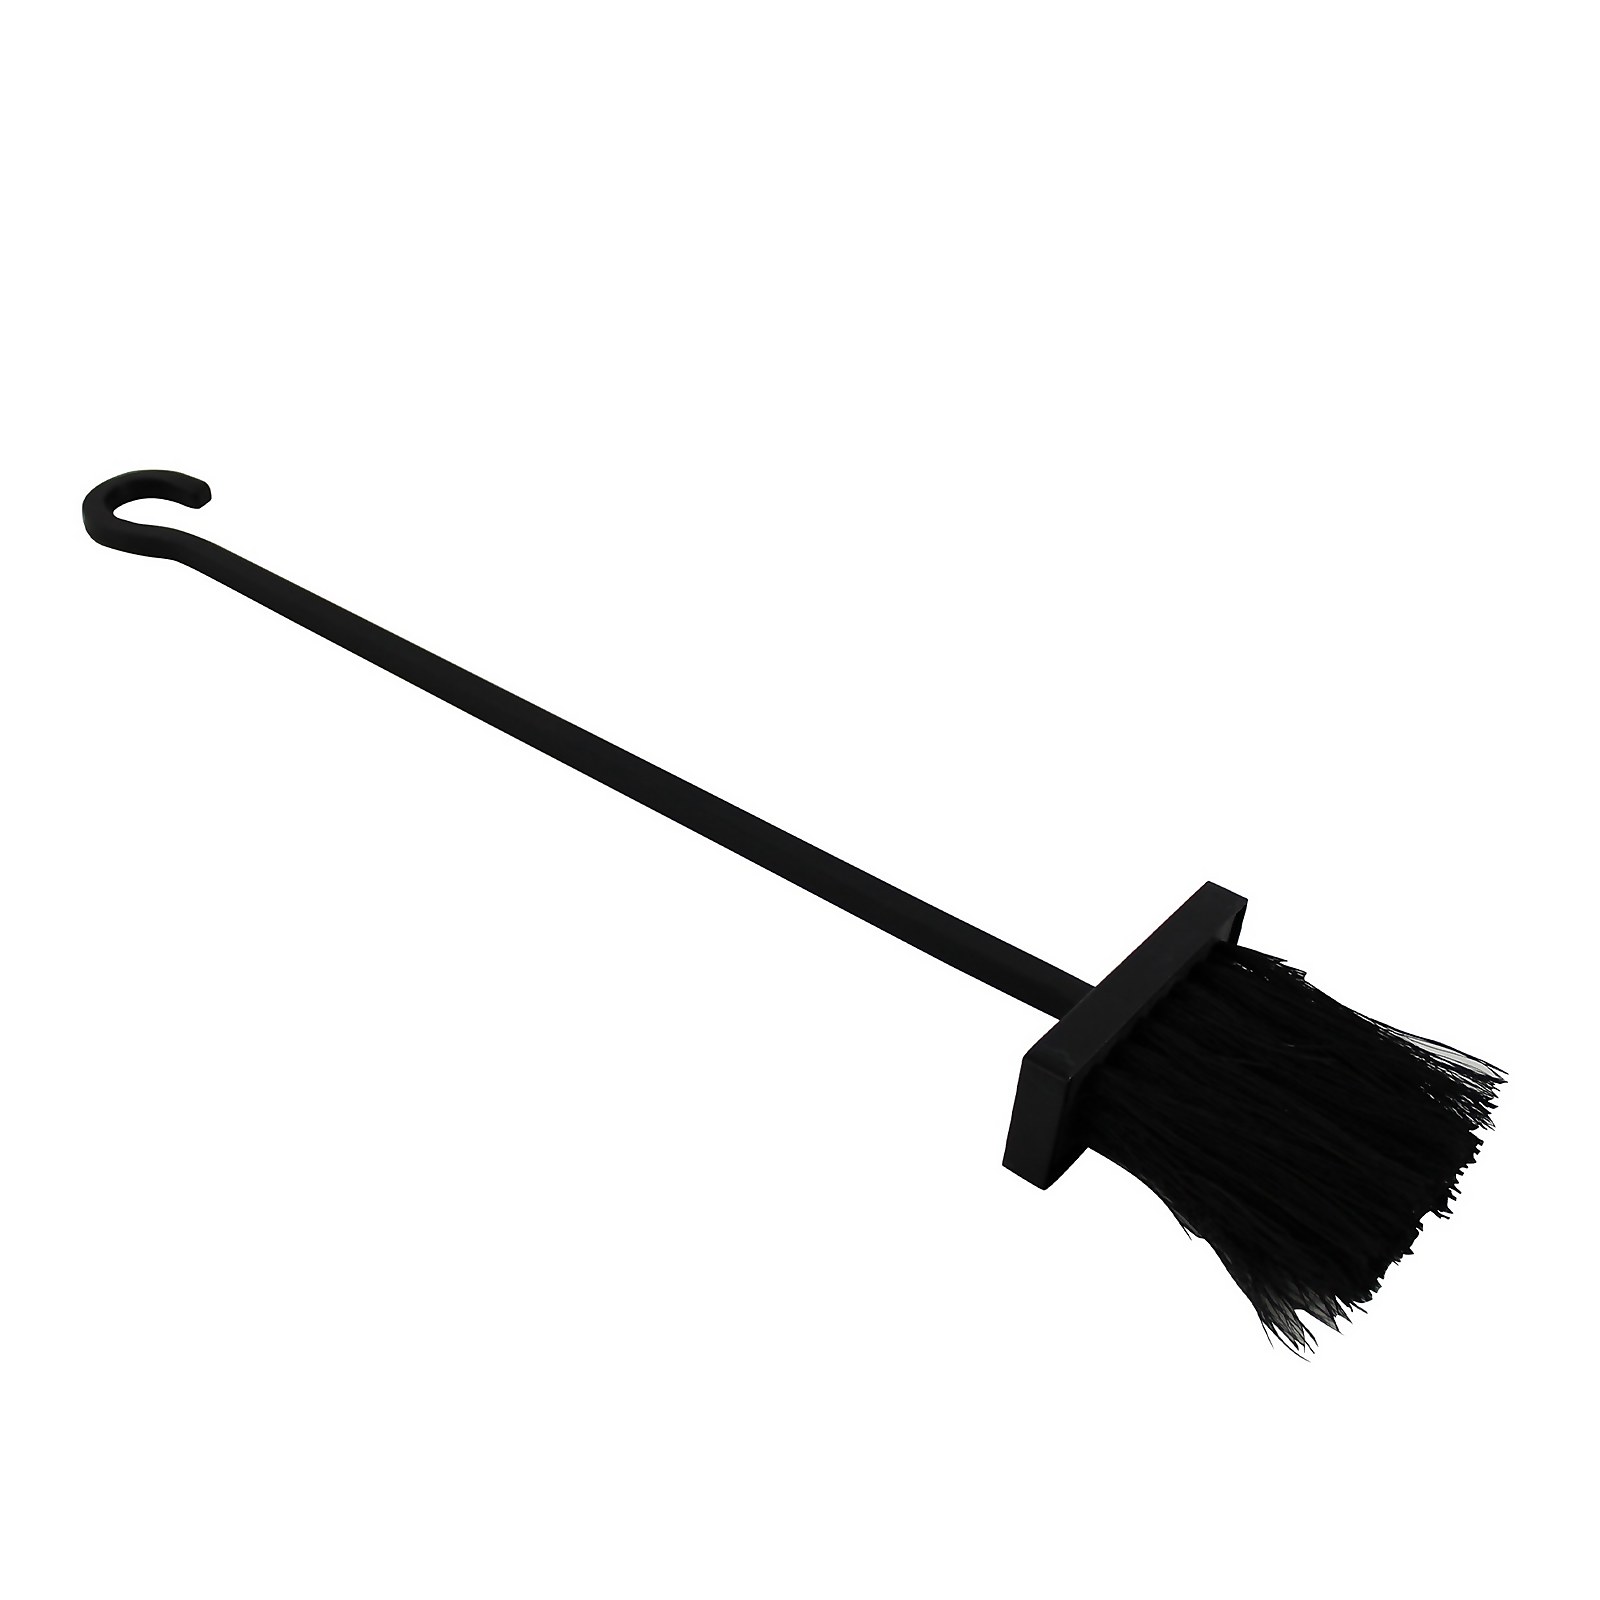 Photo of Metal Long Handle Brush Tool - Black